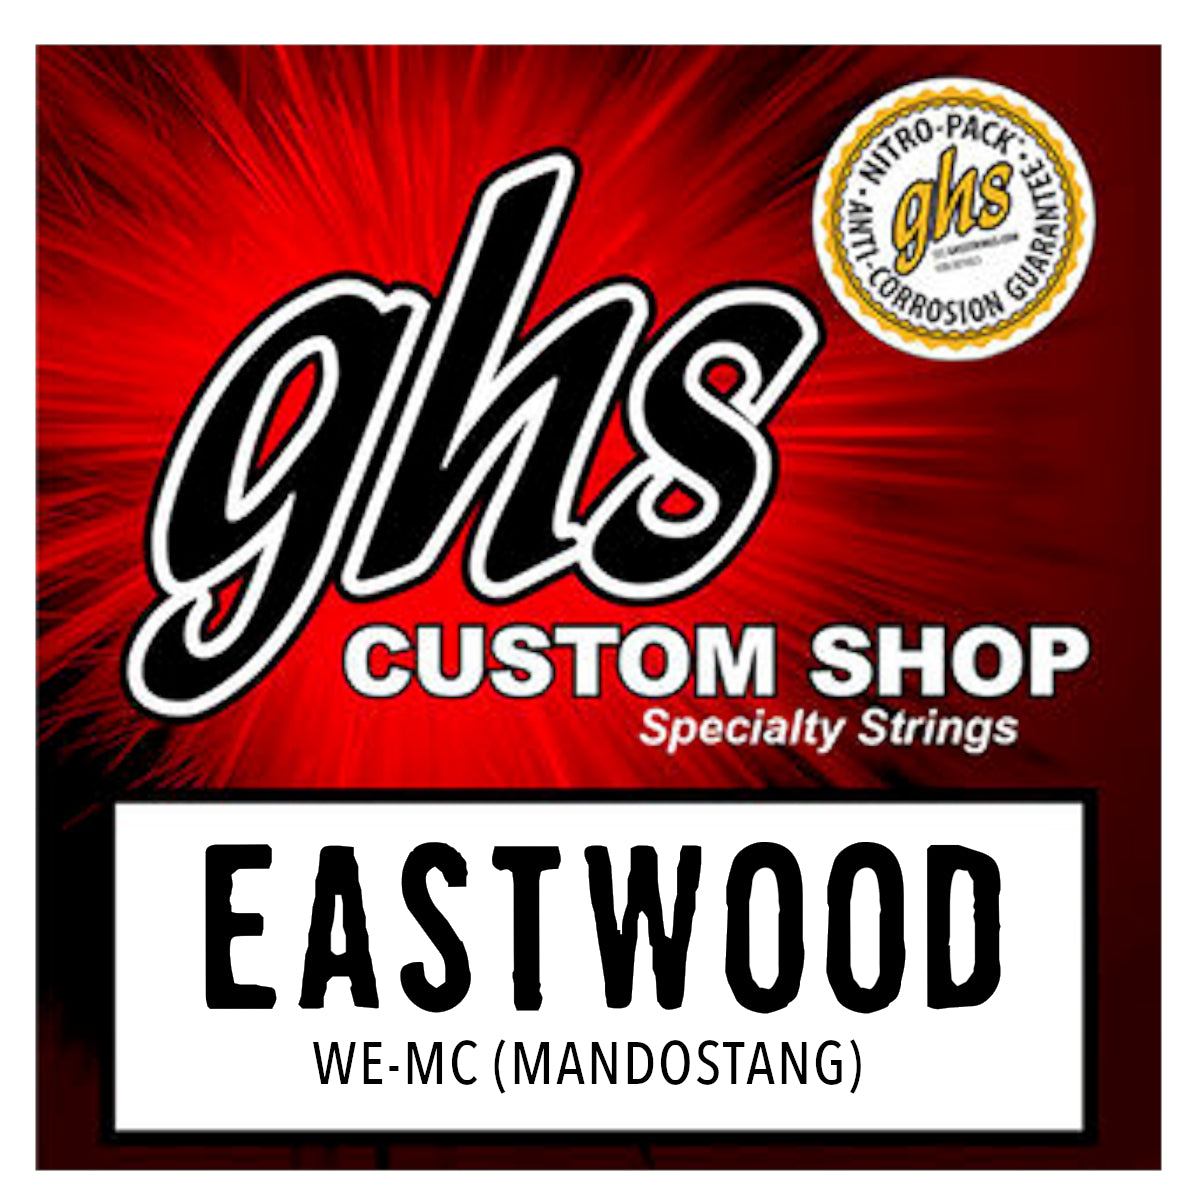 Eastwood/GHS Custom Strings - Mandostang